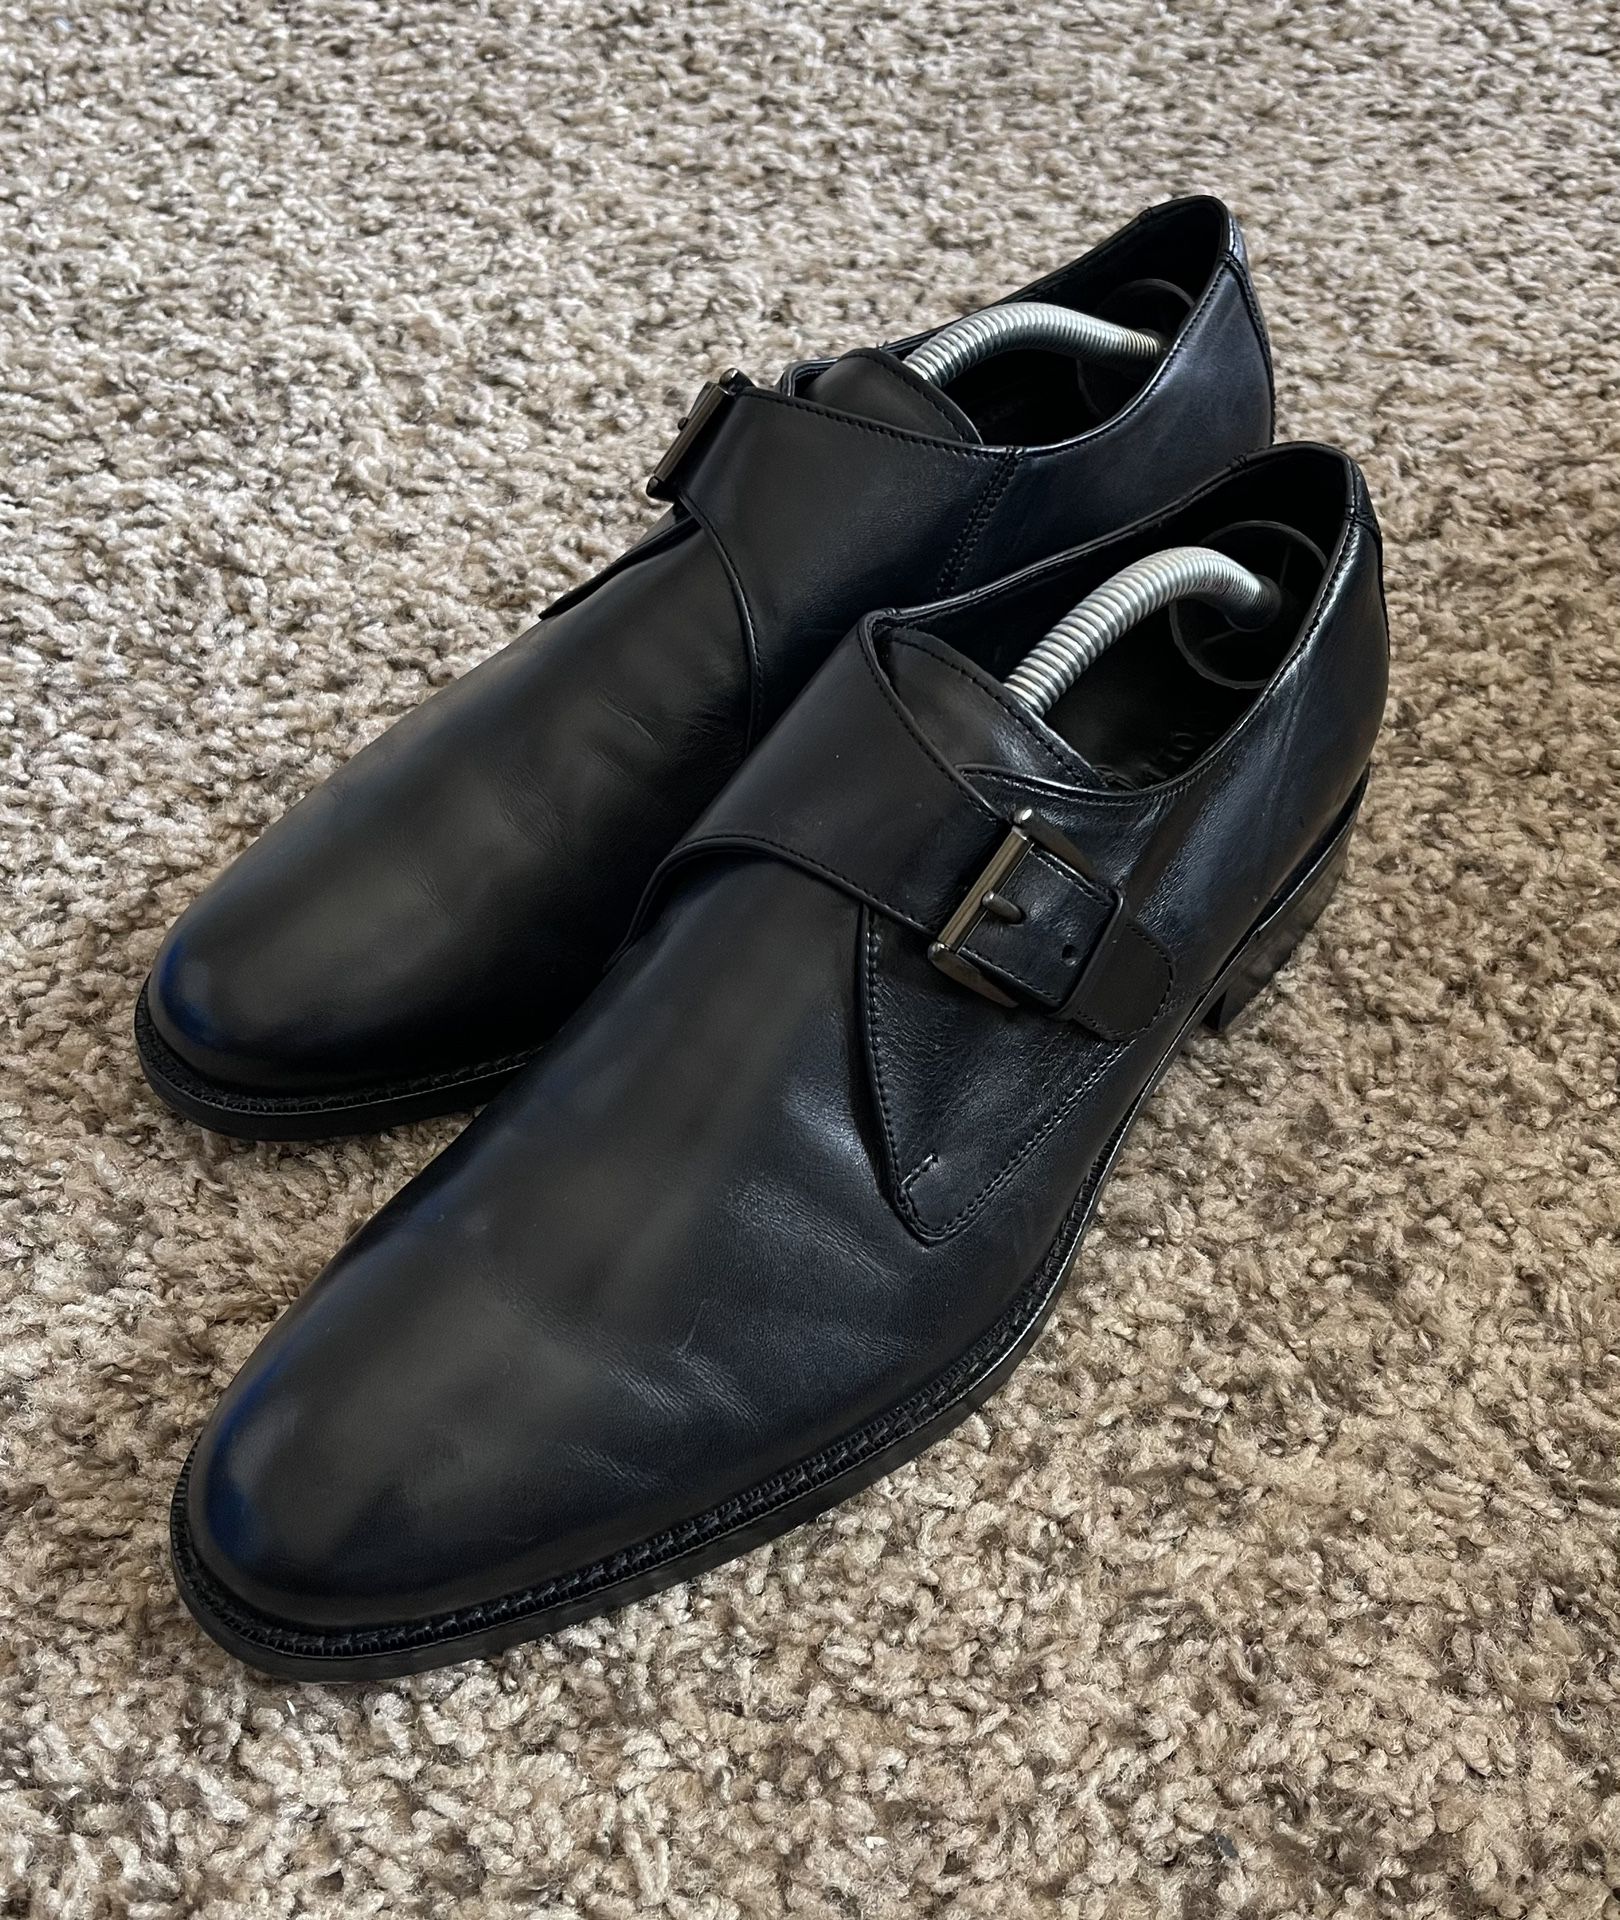 Cole Haan Air Madison Black Leather Monk Strap Dress Shoes Men’s Size 10M 